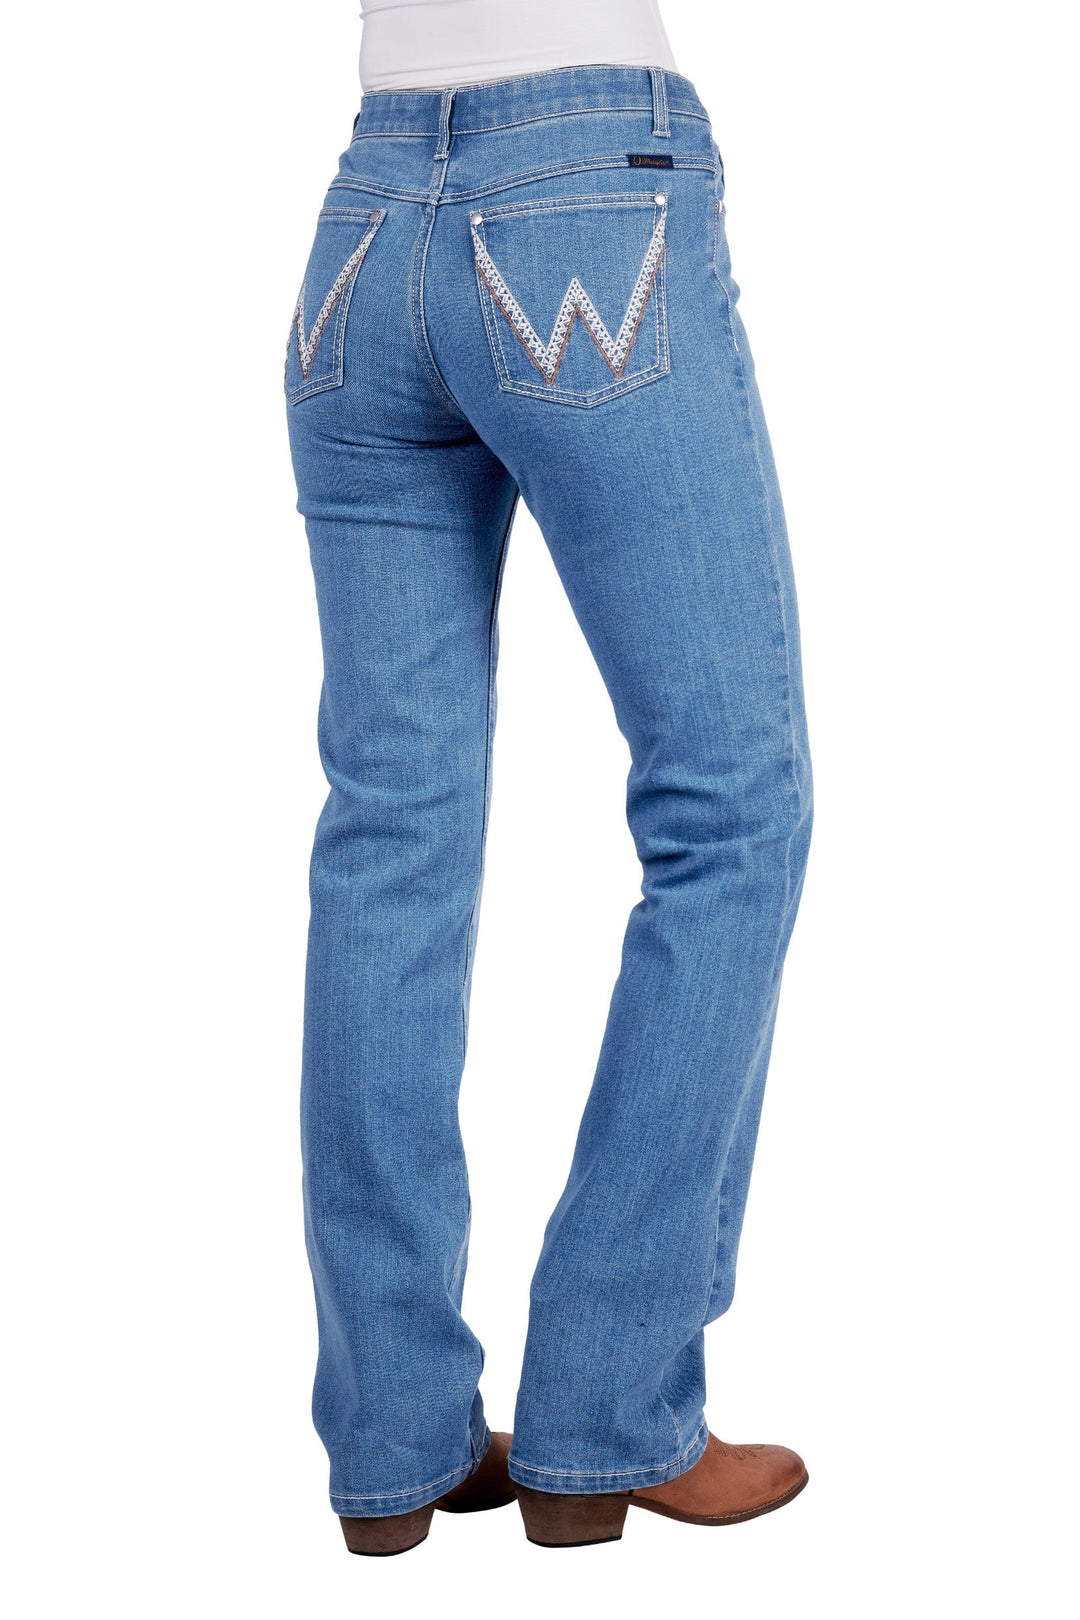 Wrangler Womens Jeans Wrangler Jeans Womens Austin Q-Baby